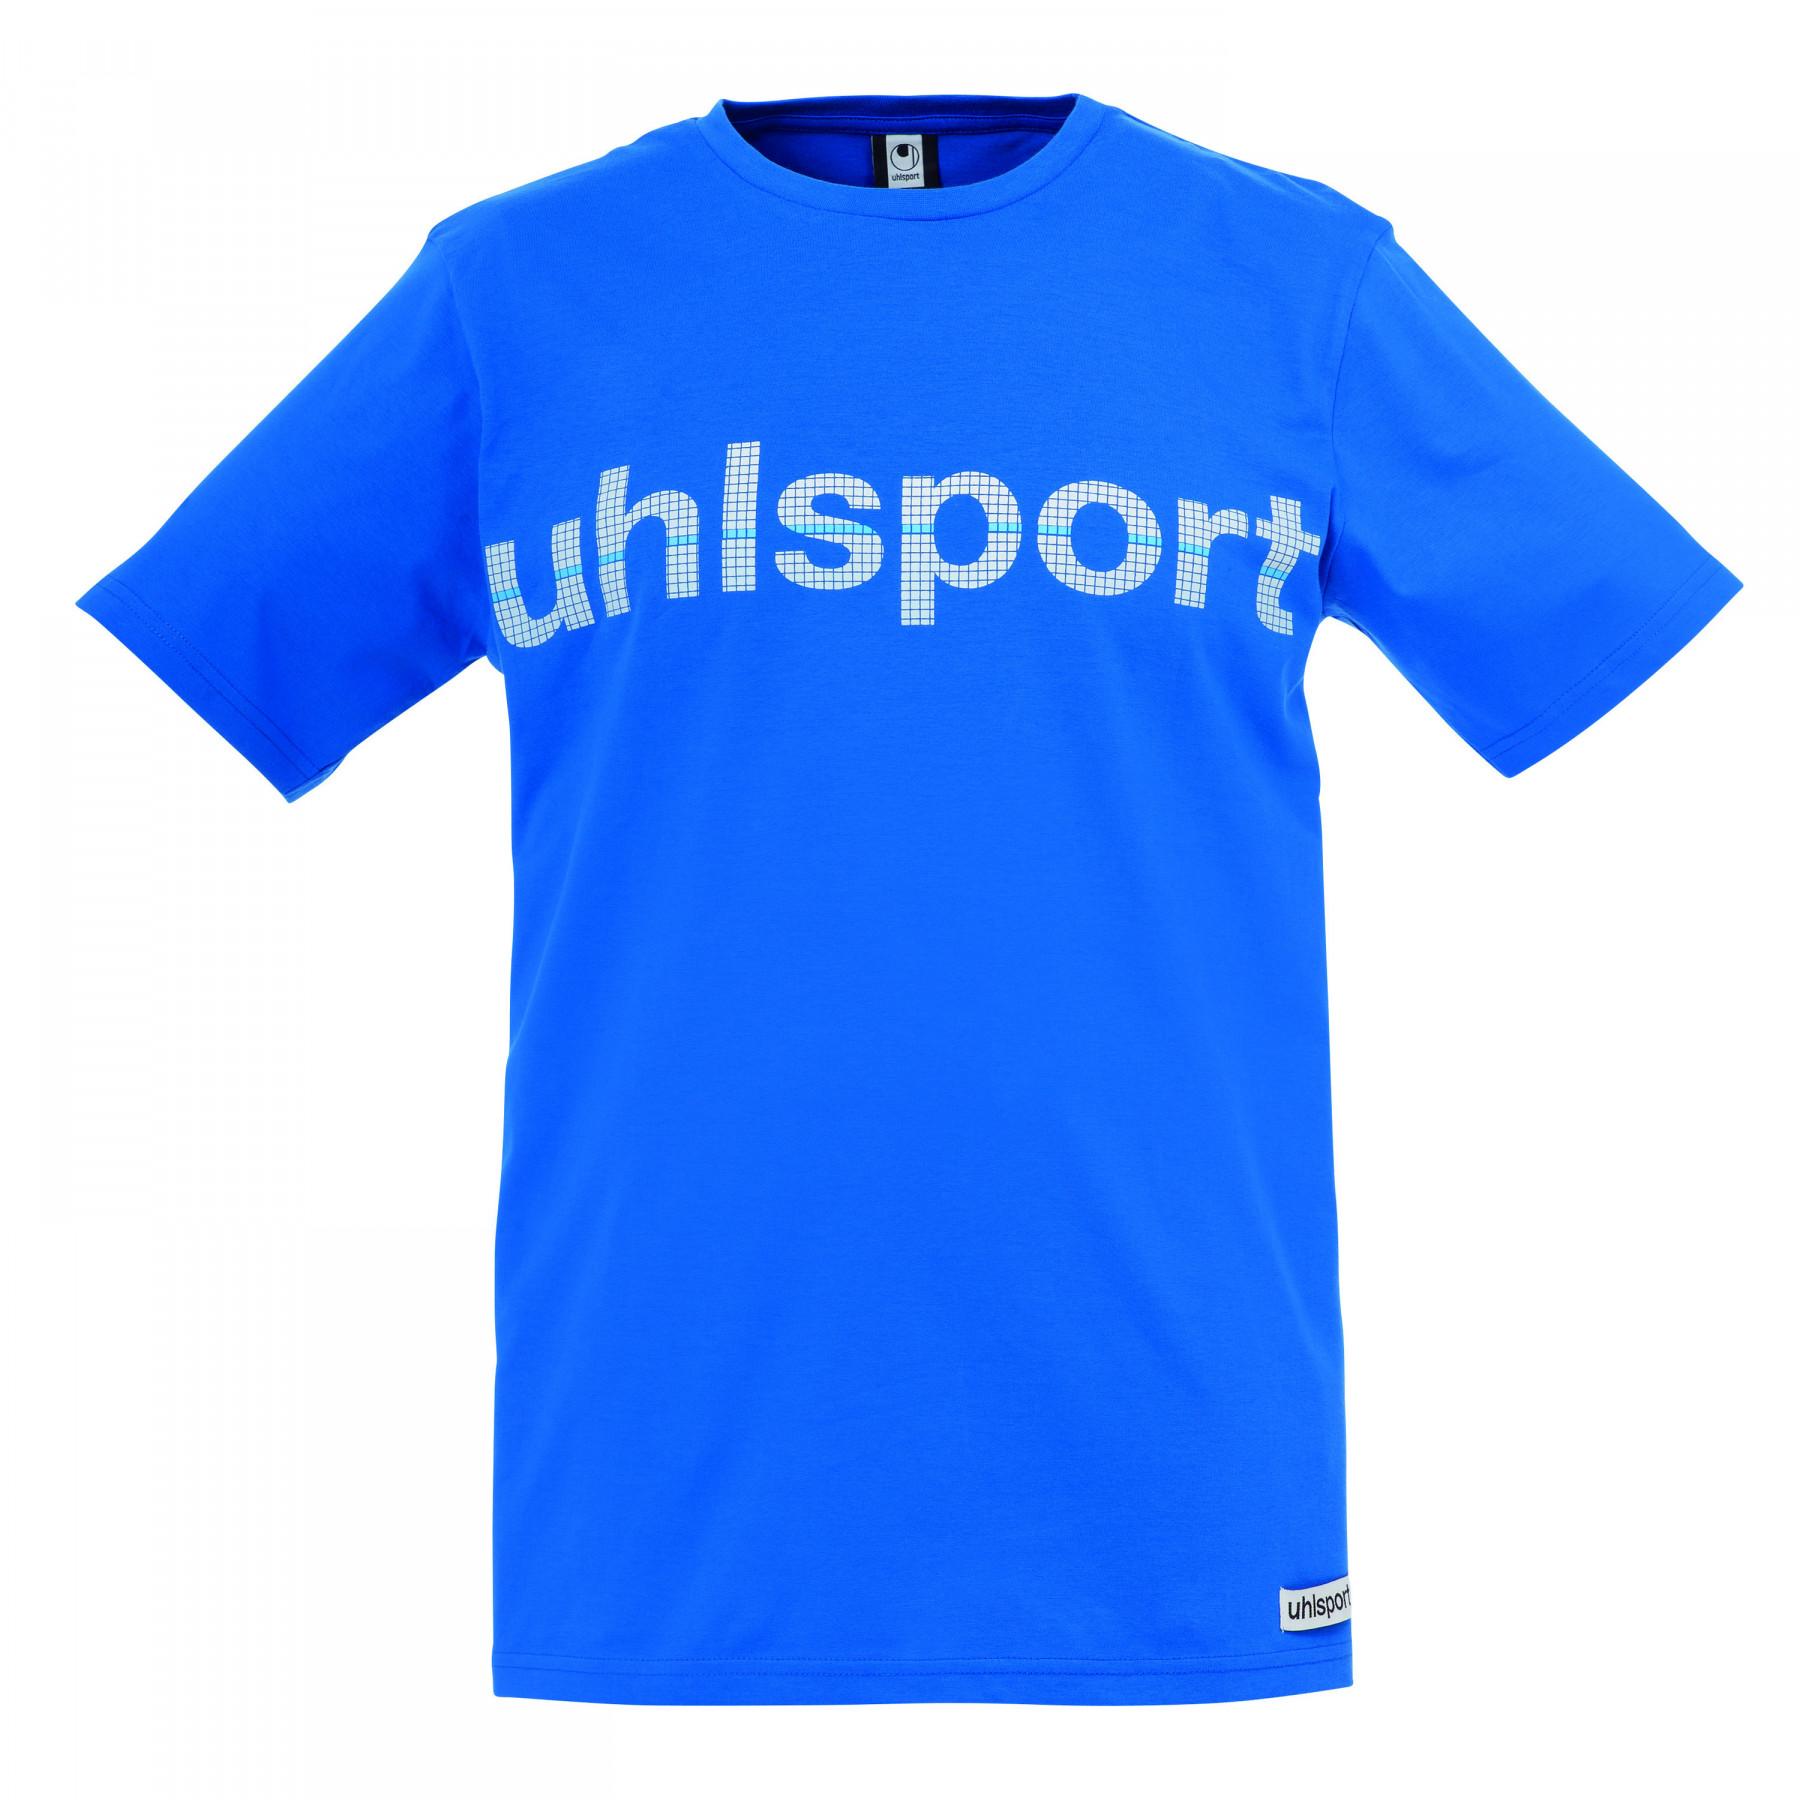 Camiseta Promo Uhlsport Essential